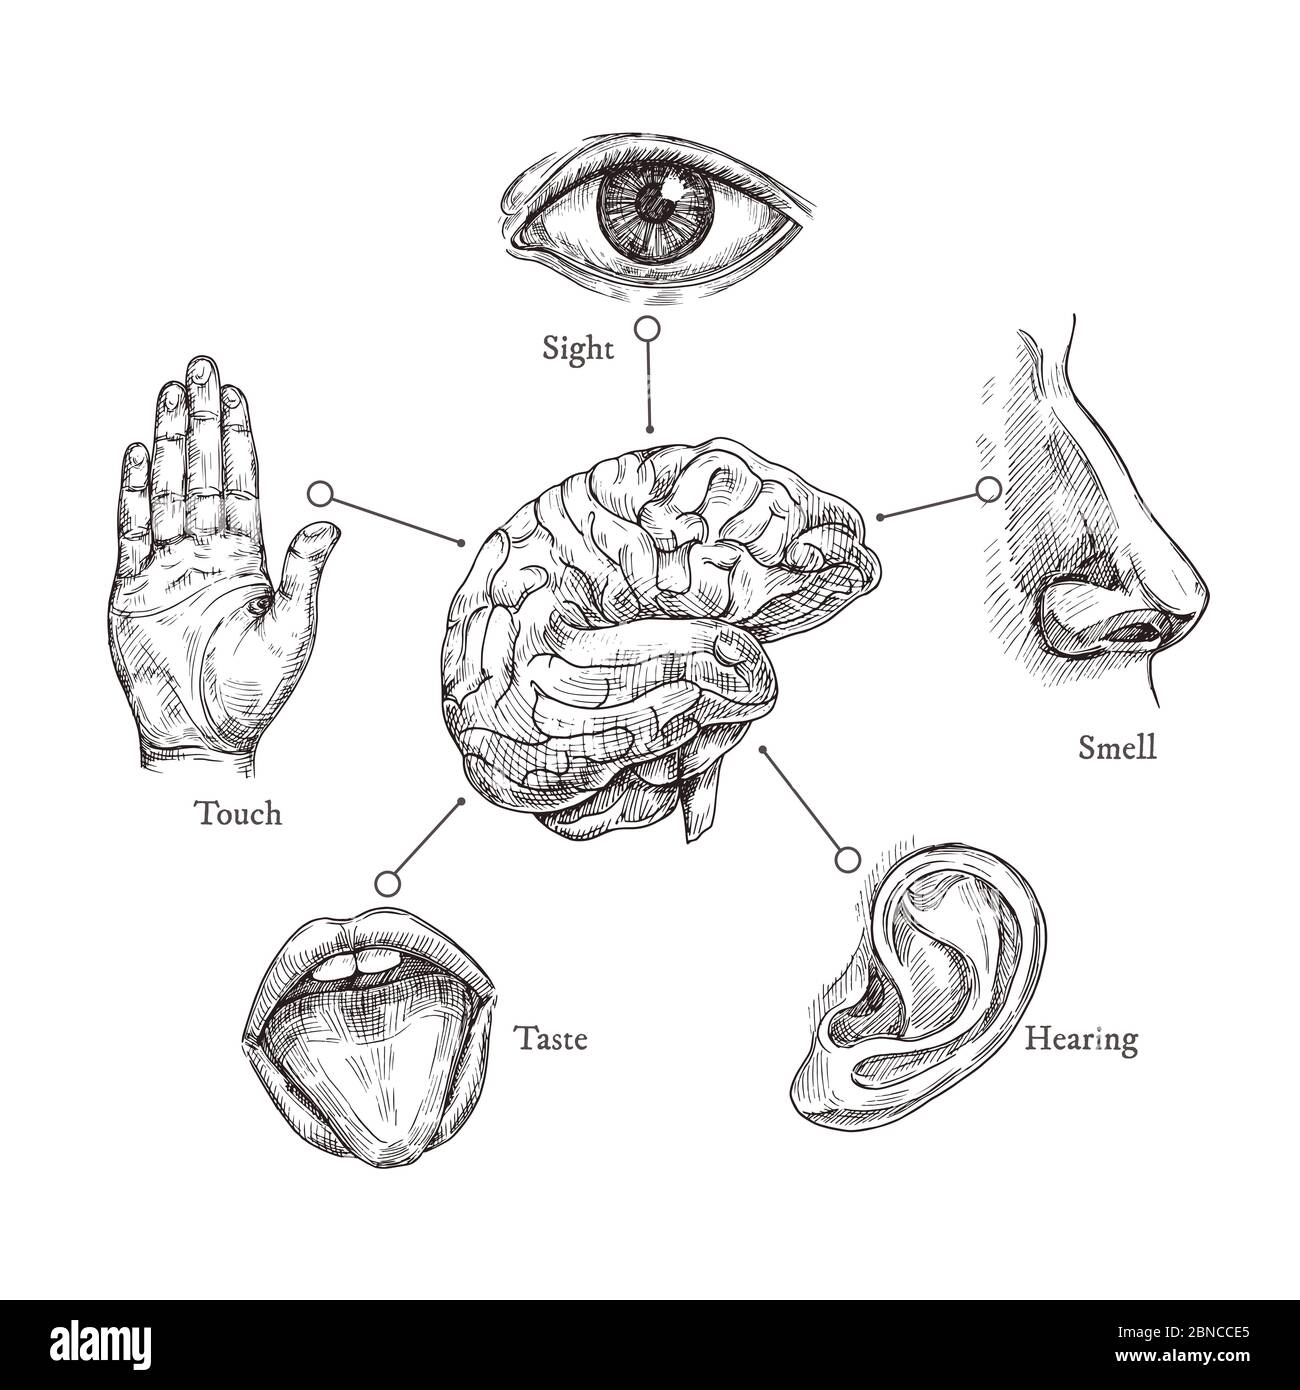 Fünf menschliche Sinne. Skizzieren Sie Mund und Auge, Nase und Ohr, Hand und Gehirn. Vektorsatz für Doodle-Körperteil. Illustration von menschlichen Organen, Nase und Ohr, Auge und Mund Stock Vektor